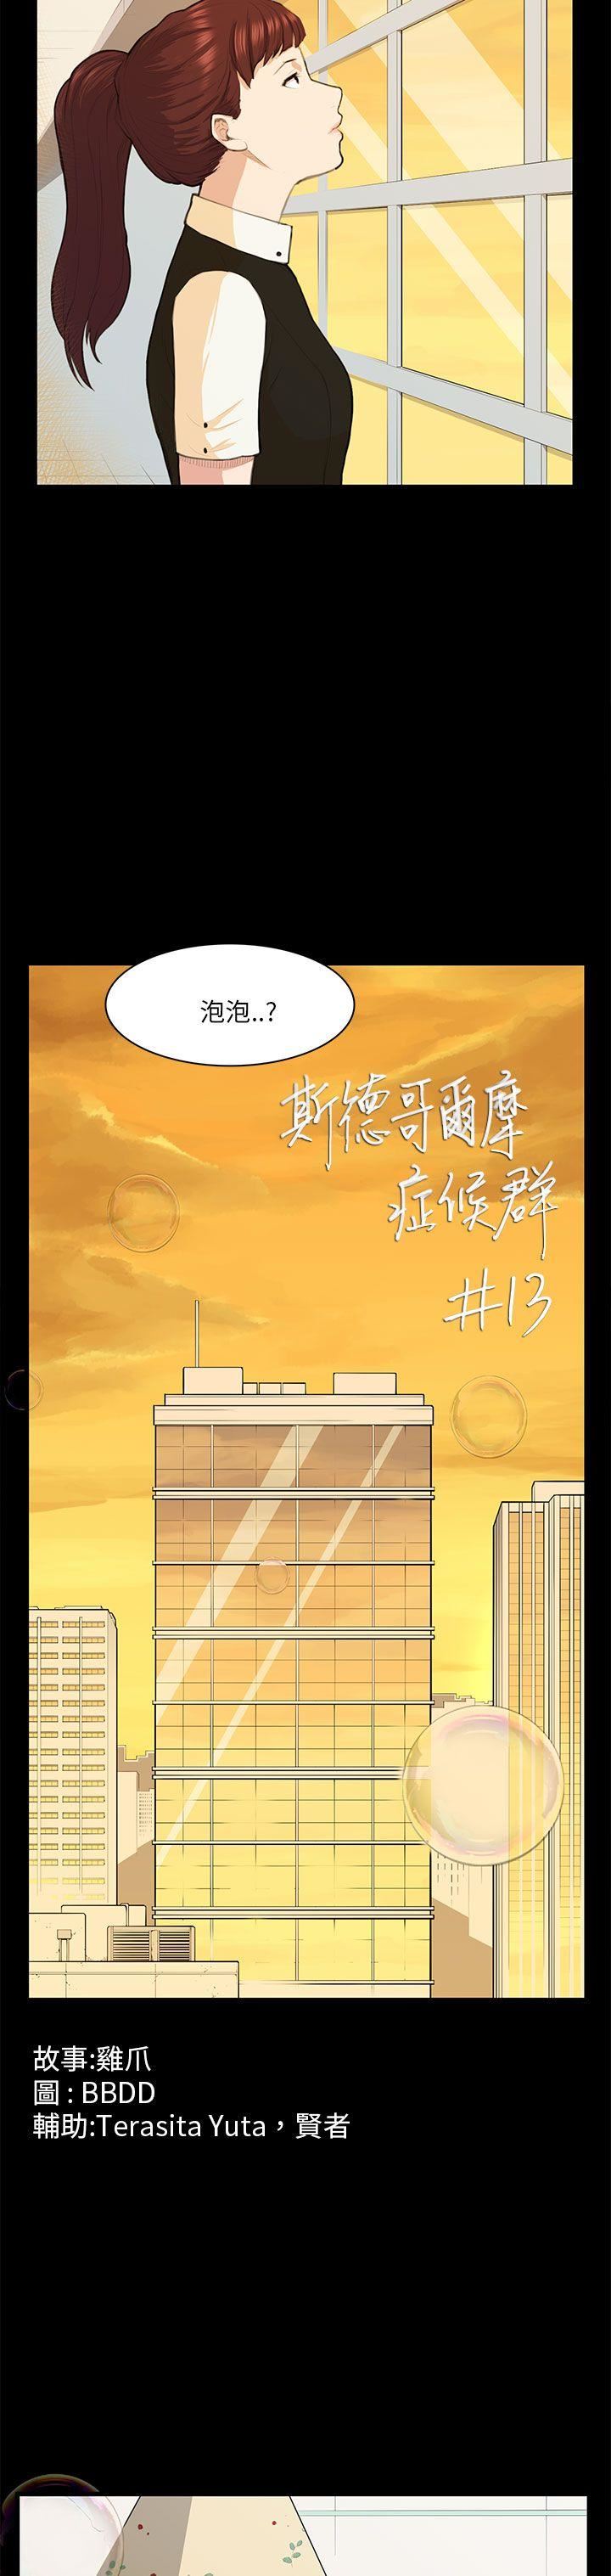 韩国污漫画 斯德哥爾摩癥候群 第13话 4